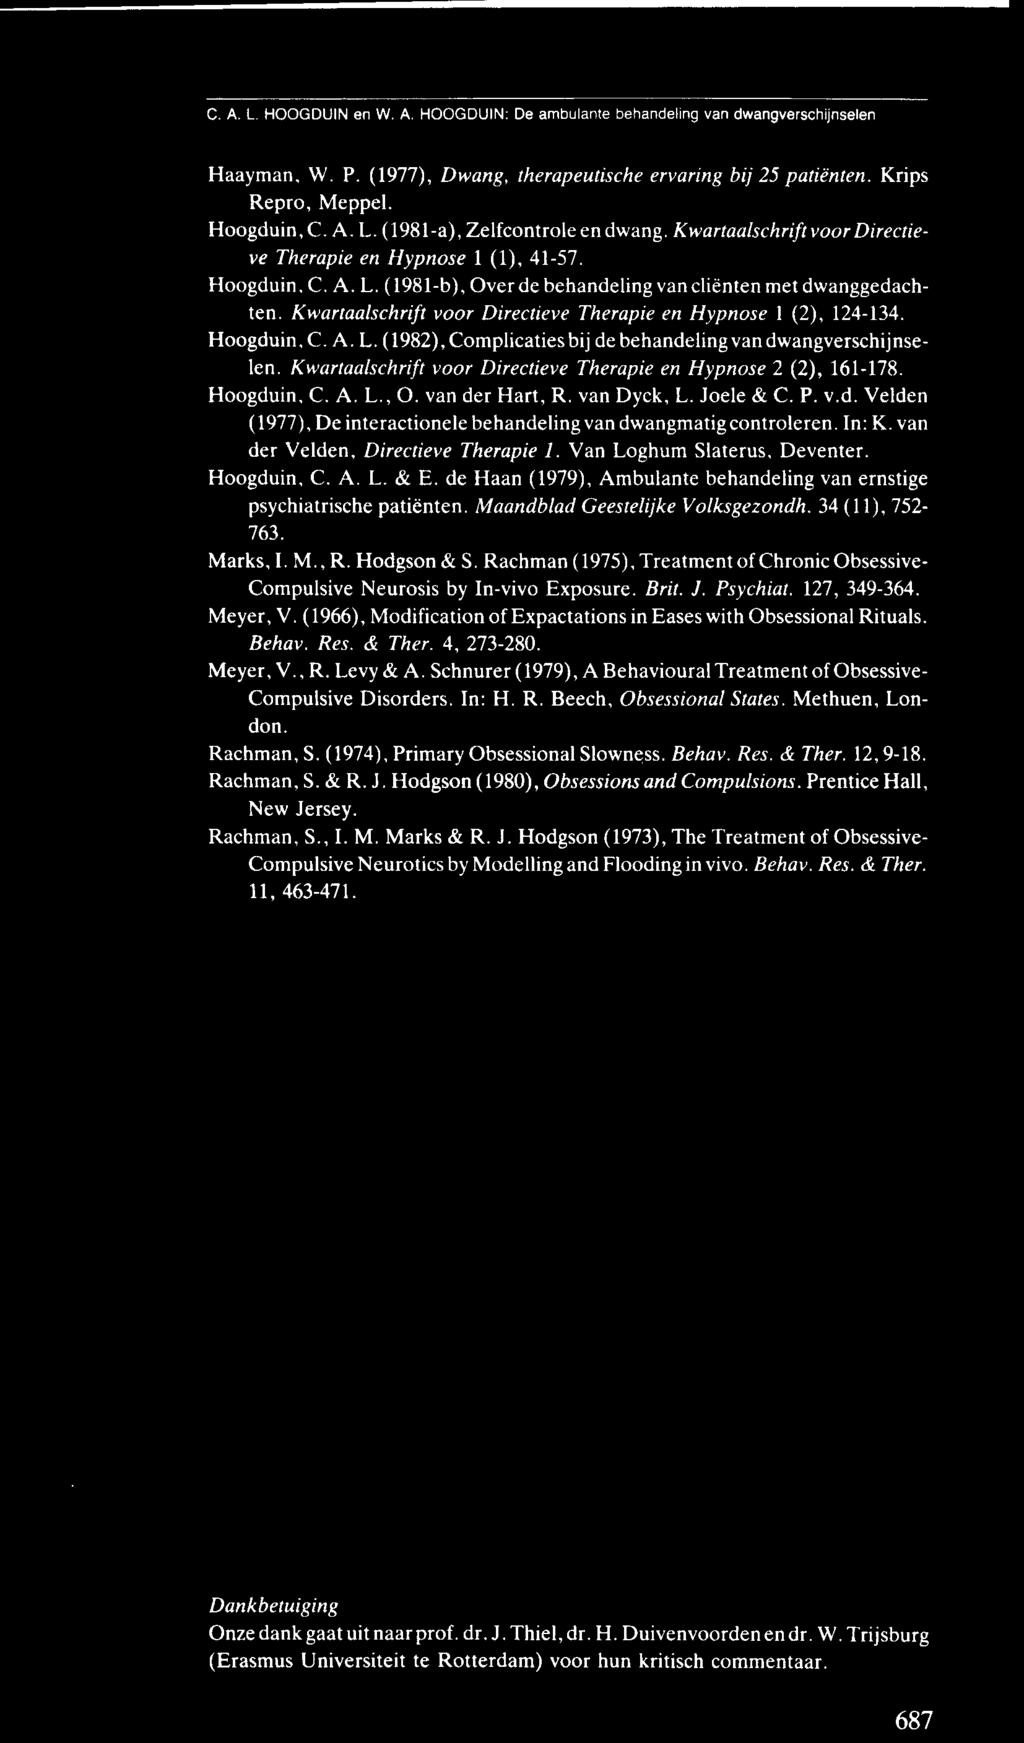 Kwartaalschrift voor Directieve Therapie en Hypnose 1 (2), 124-134. Hoogduin, C. A. L. (1982), Complicaties bij de behandeling van dwangverschijnselen.